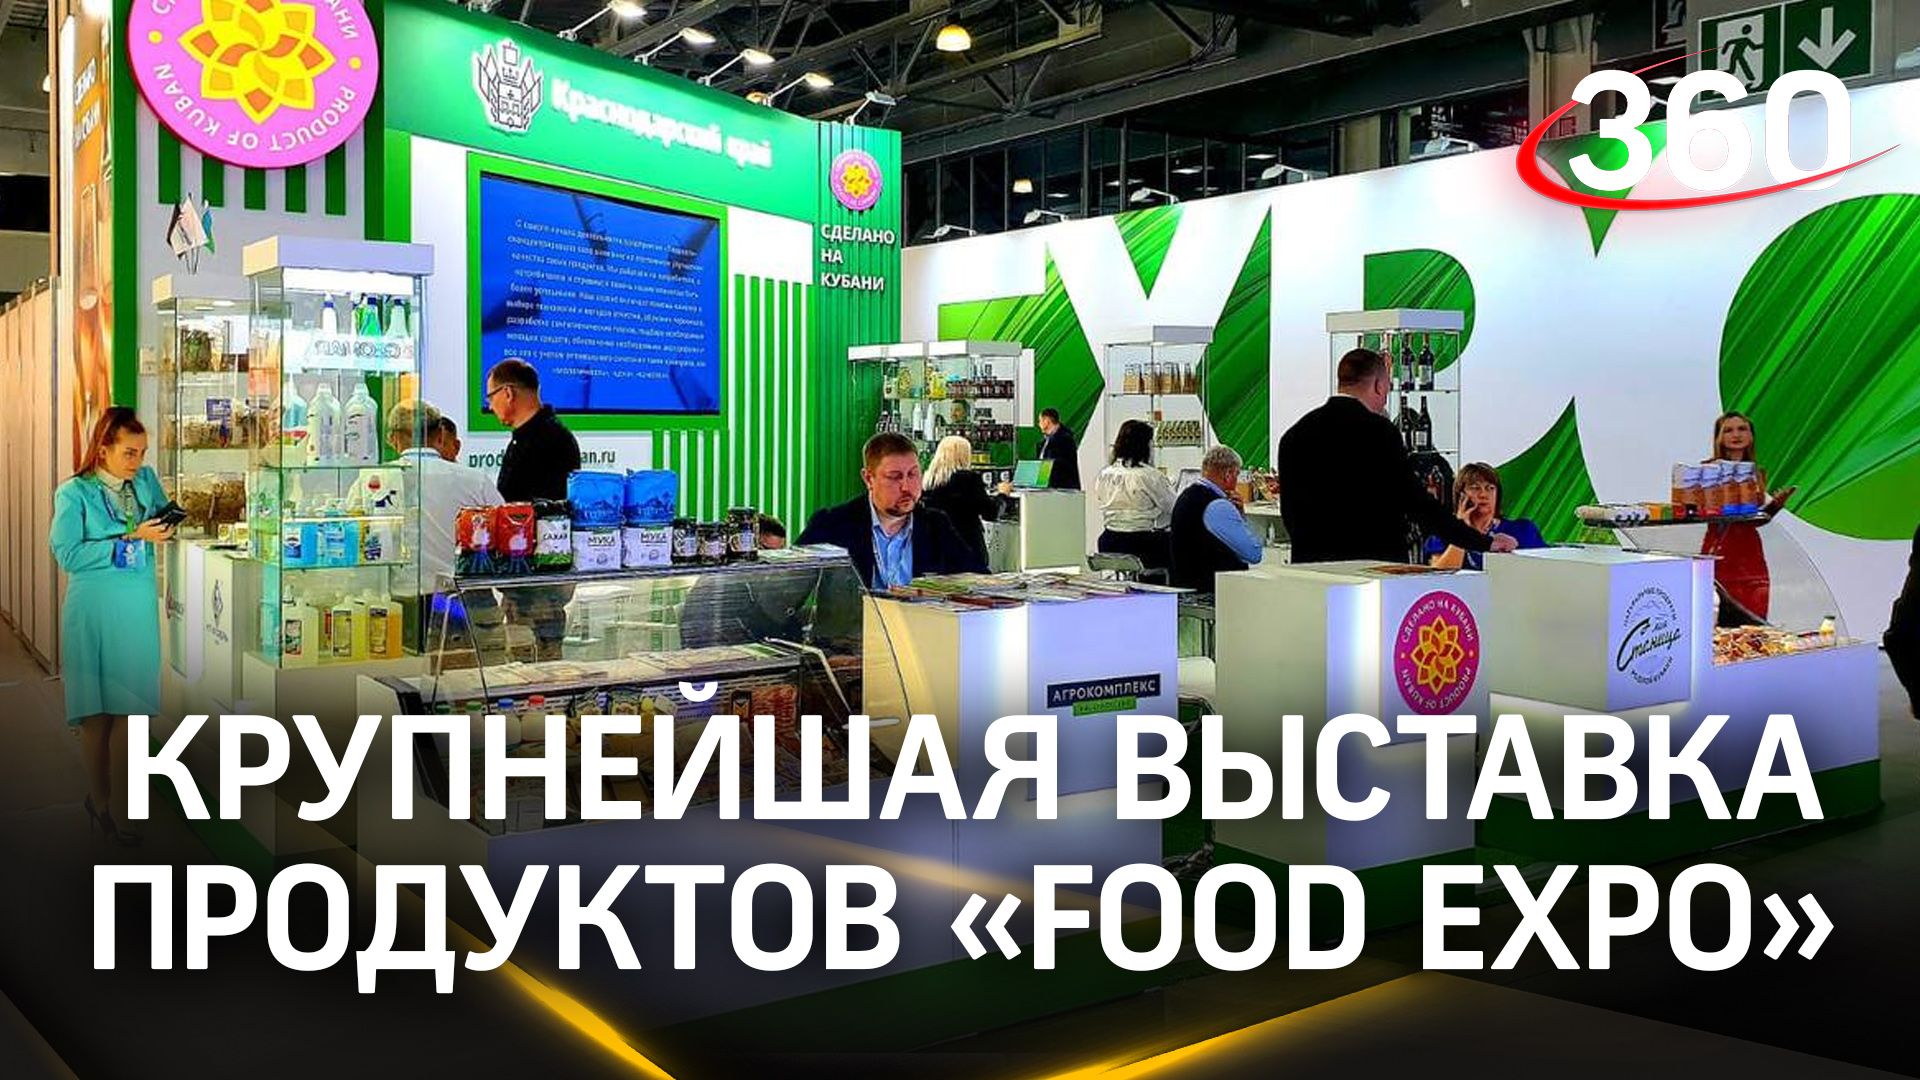 В Подмосковье открылась крупнейшая в России выставка продуктов питания «Food Expo»